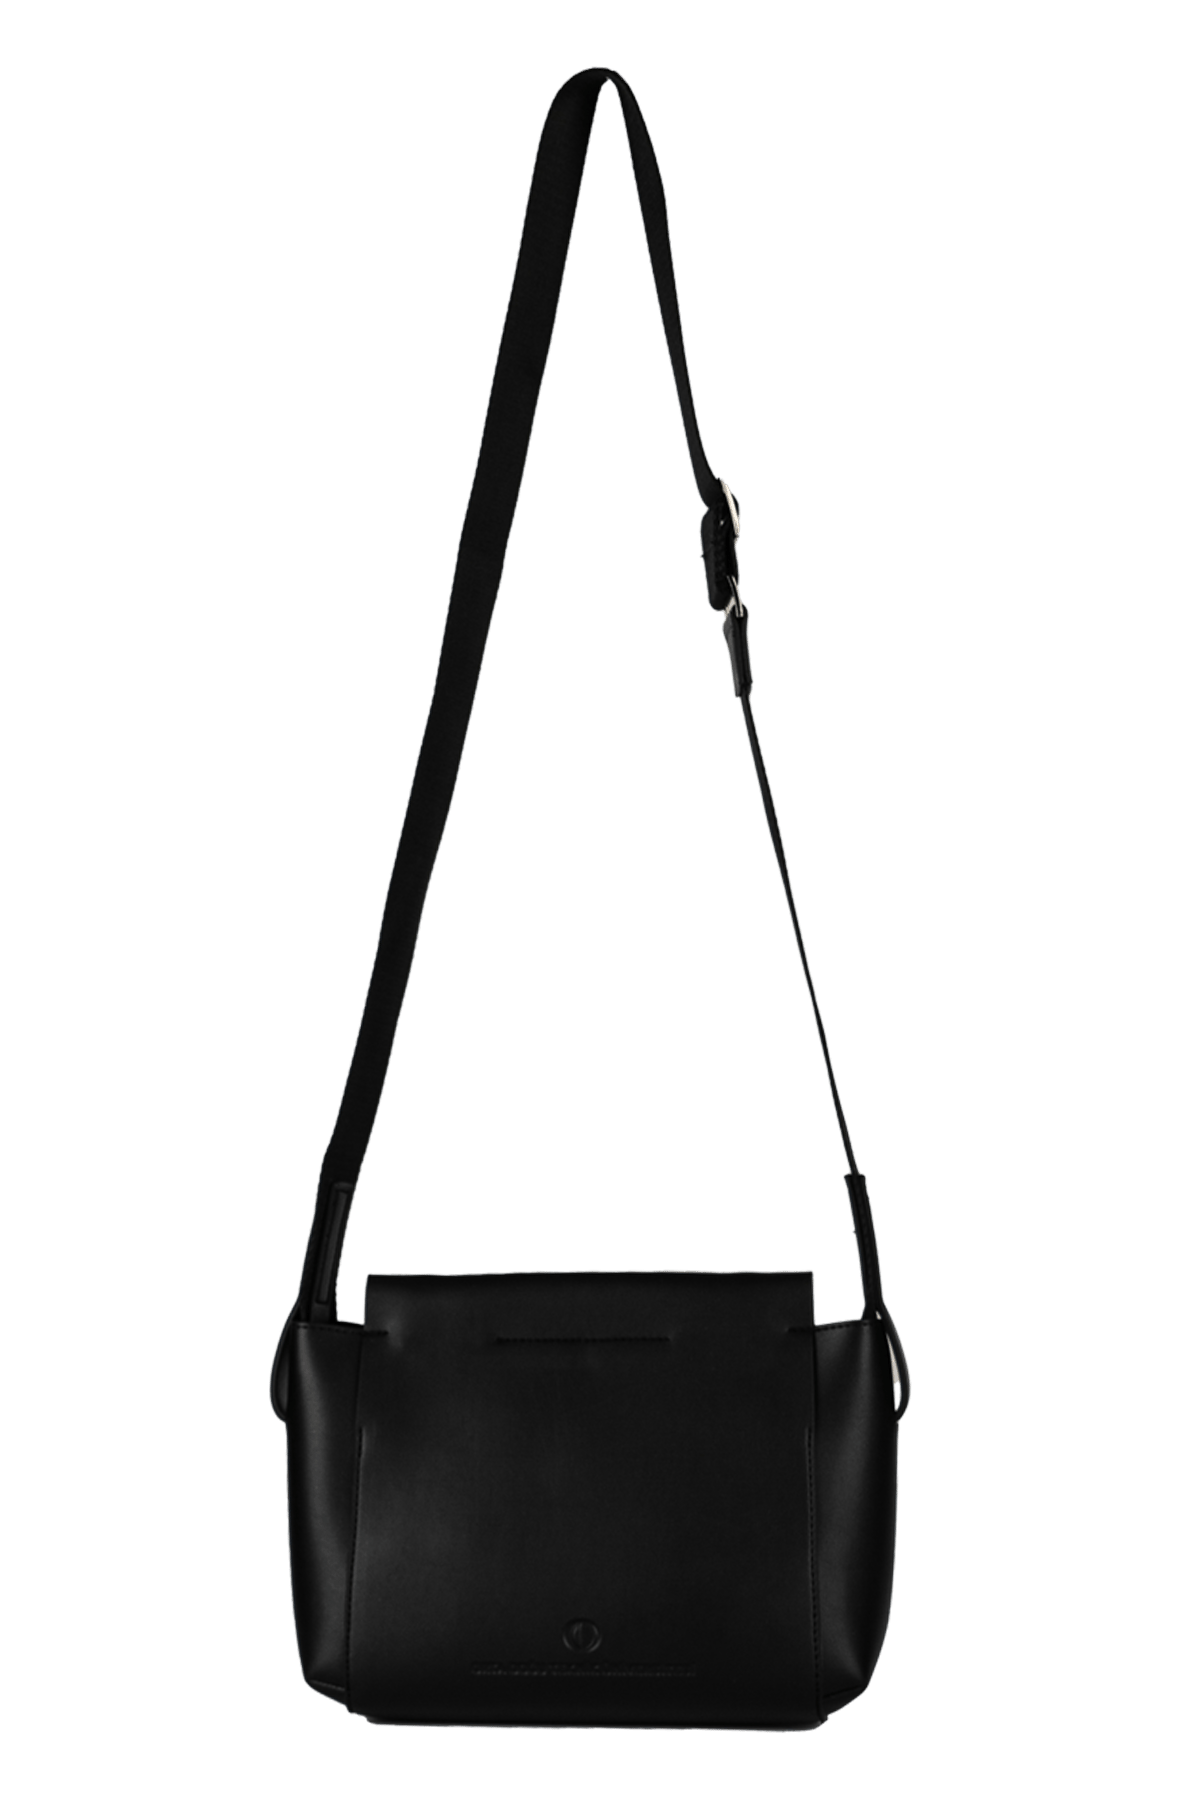 Küçük Boy Kadın Çanta-Model No:102 (Siyah)